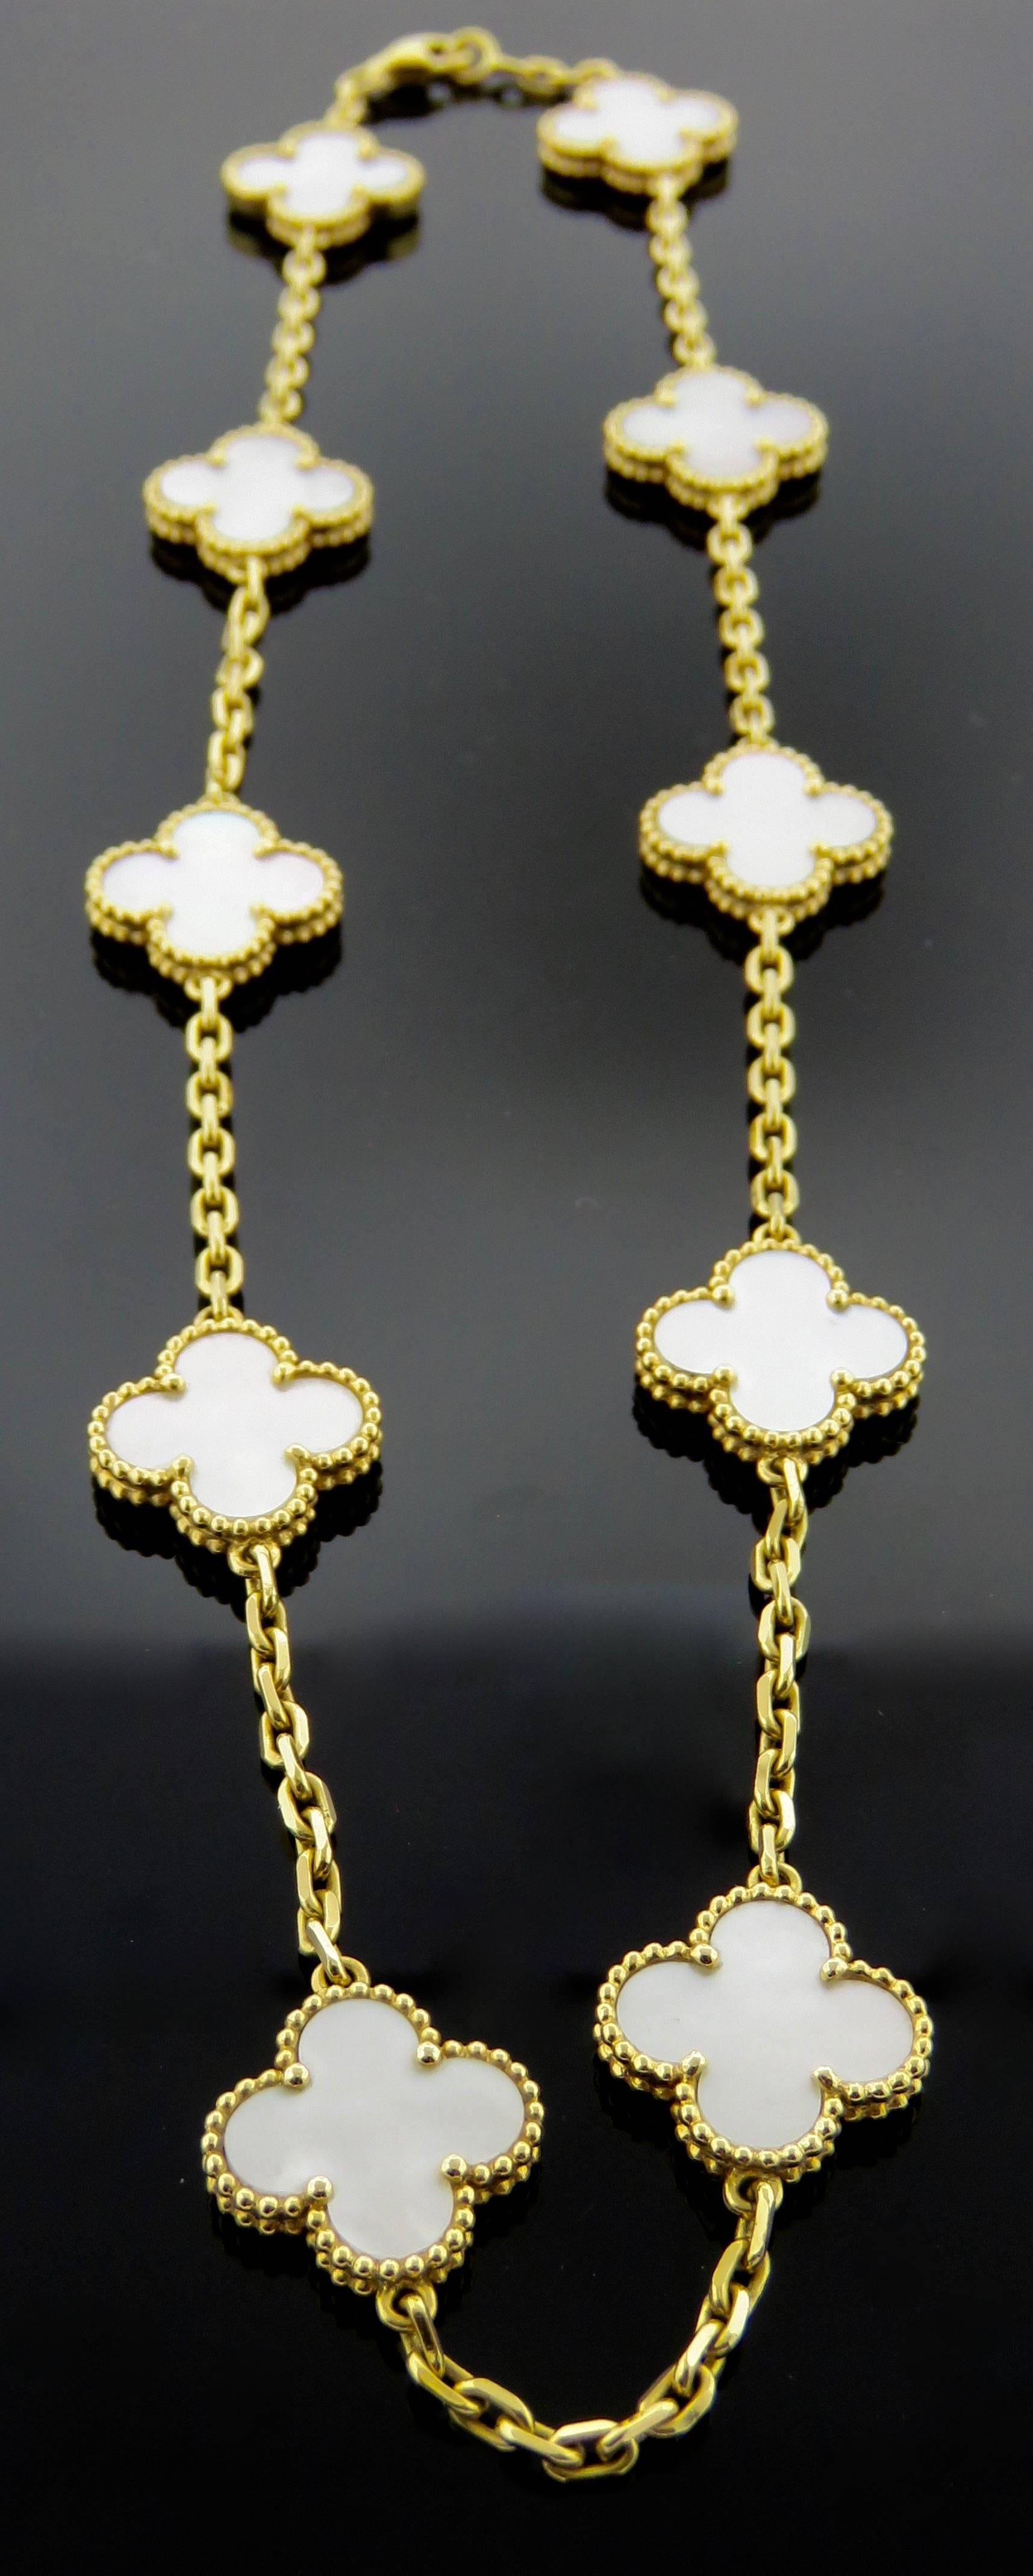 Modern Van Cleef & Arpels Alhambra Mother-of-Pearl Necklace and Bracelet Set